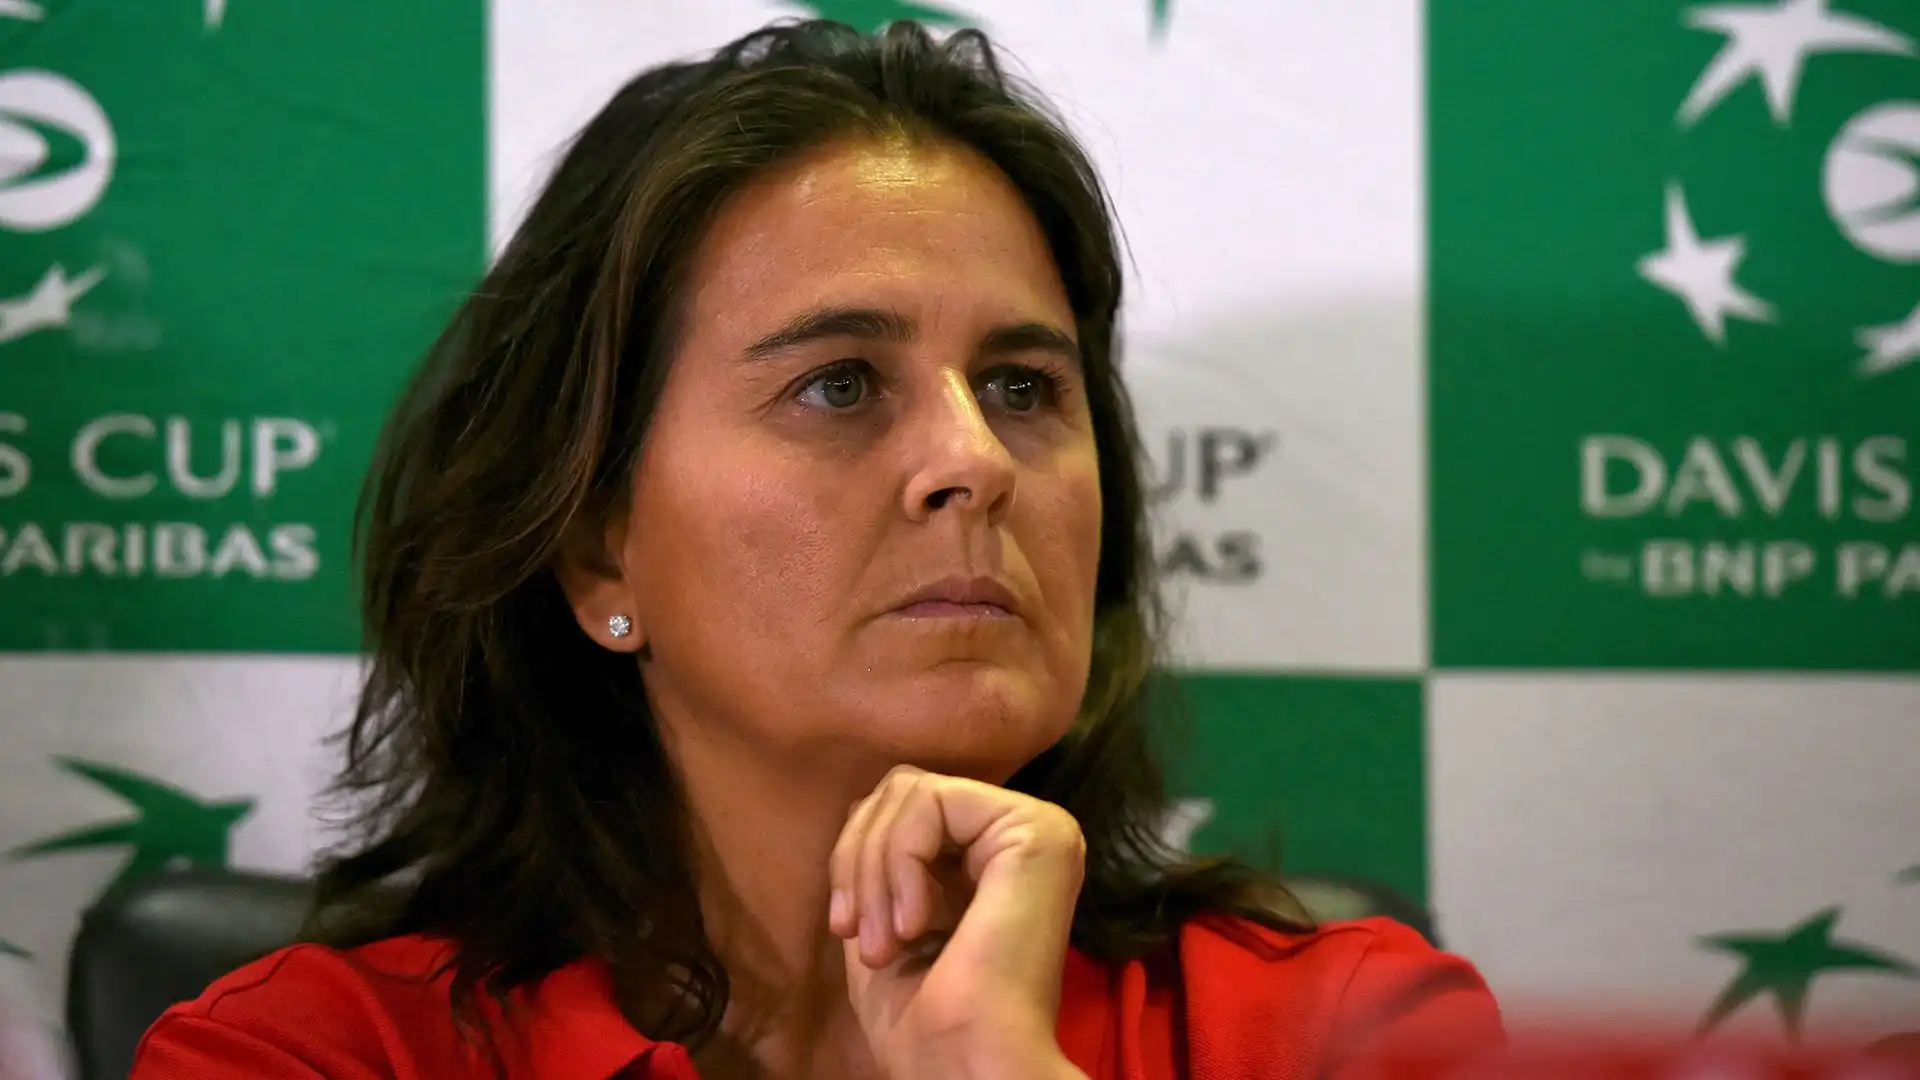 La spagnola ha 51 anni ed è stata eletta WTA Coach of the Year nel 2021 per il suo lavoro con Garbine Muguruza